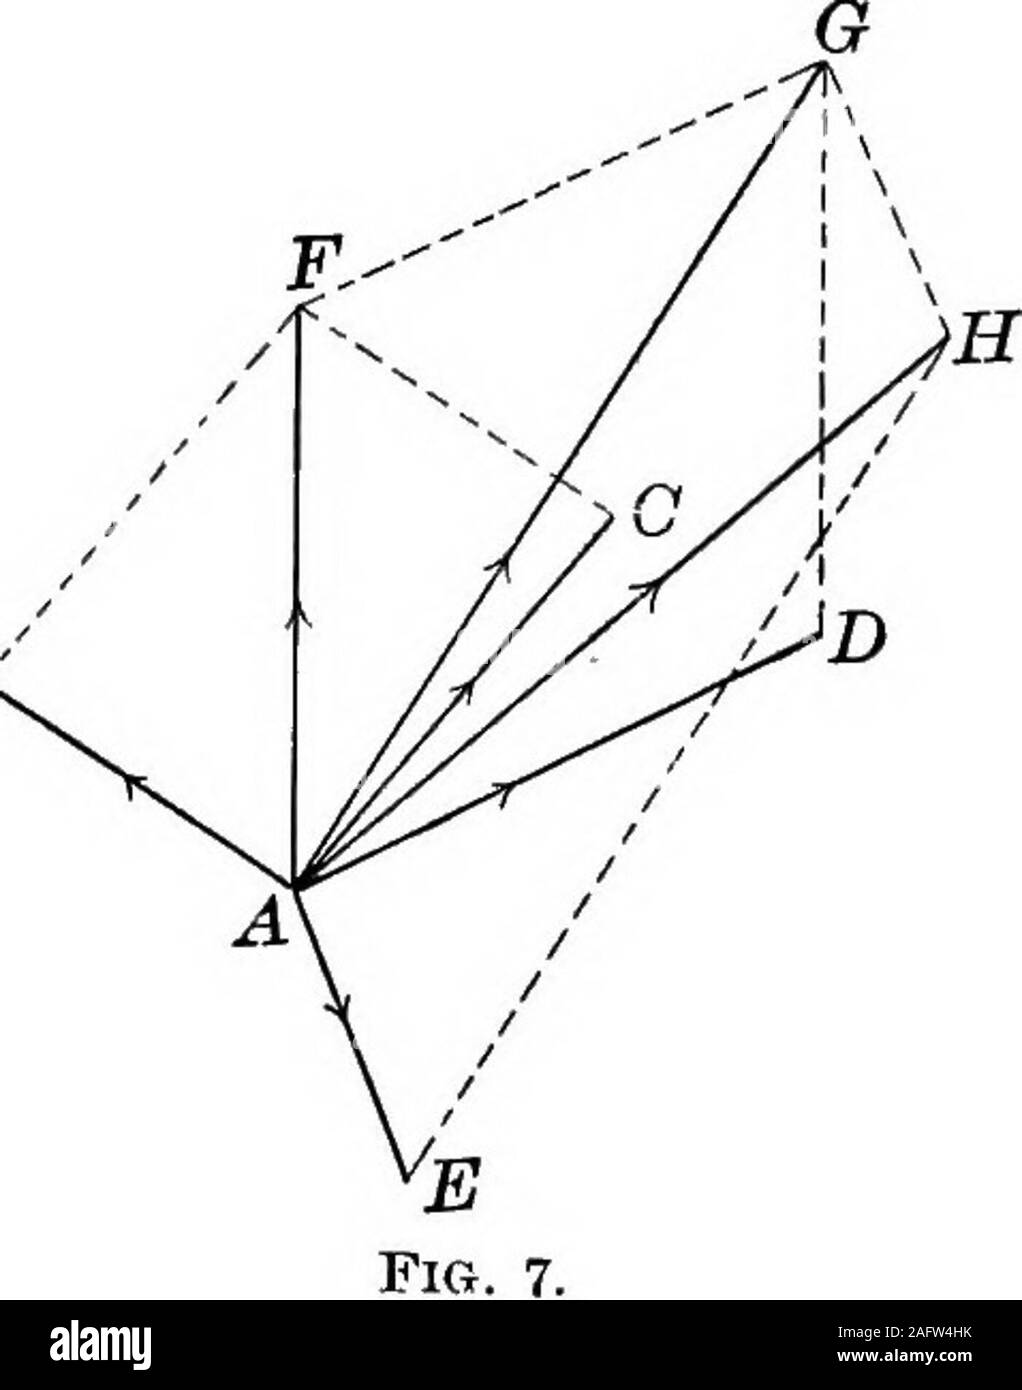 . I principi della fisica. nd am, MN, e Nb offrono-inviato velocità tha per il sameintervals nella direzione ab; e avi, MN, e Nc thevelocities nella direzione ac. Se i punti c e d e d e b sono unite da (tratteggiata) le linee,abbiamo un parallelogramma di cui la linea a d, che realizza, risultante è una diagonale. Quindi per trovare la risultante oftwo velocità simultanee quando fanno un angolo witheach altri, la regola è: costruire un parallelogramma di cuiè lati adiacenti rappresentano le due velocità, e thediagonal che giace tra questi adjacentsides rappresenta theirresultant. Quando Foto Stock